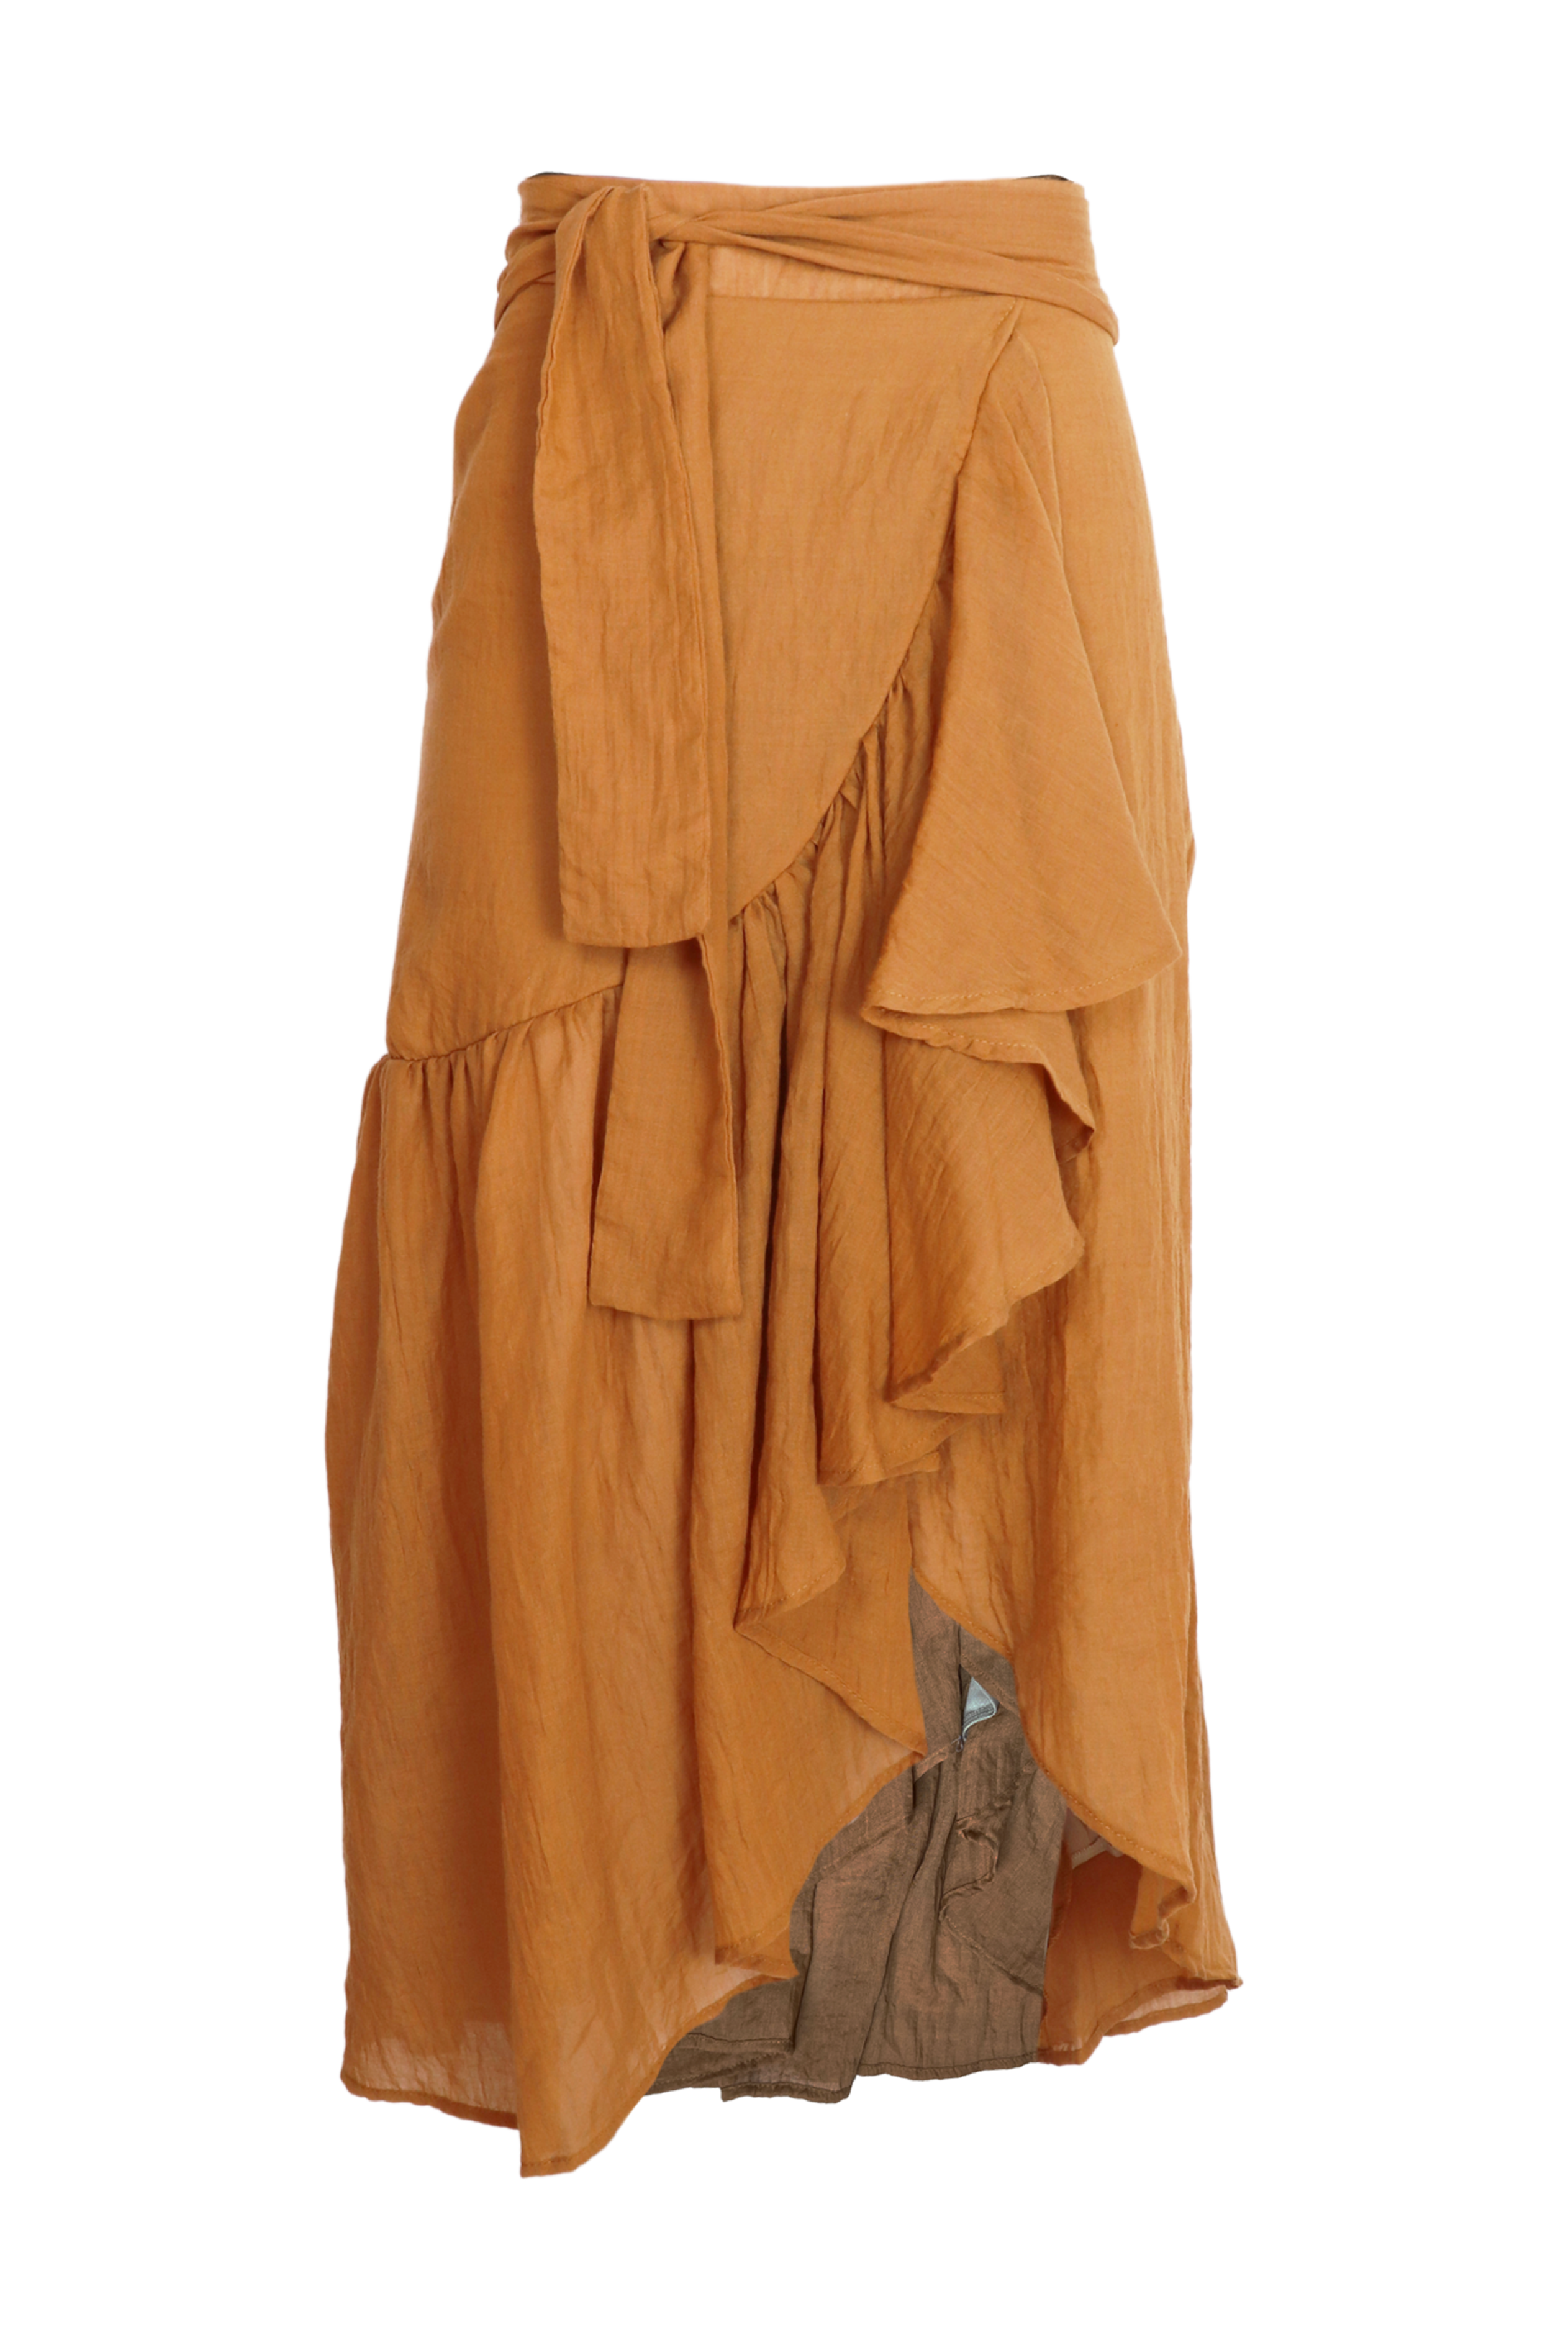 Hermosa falda midi con lazos para ajustar en cintura color camel